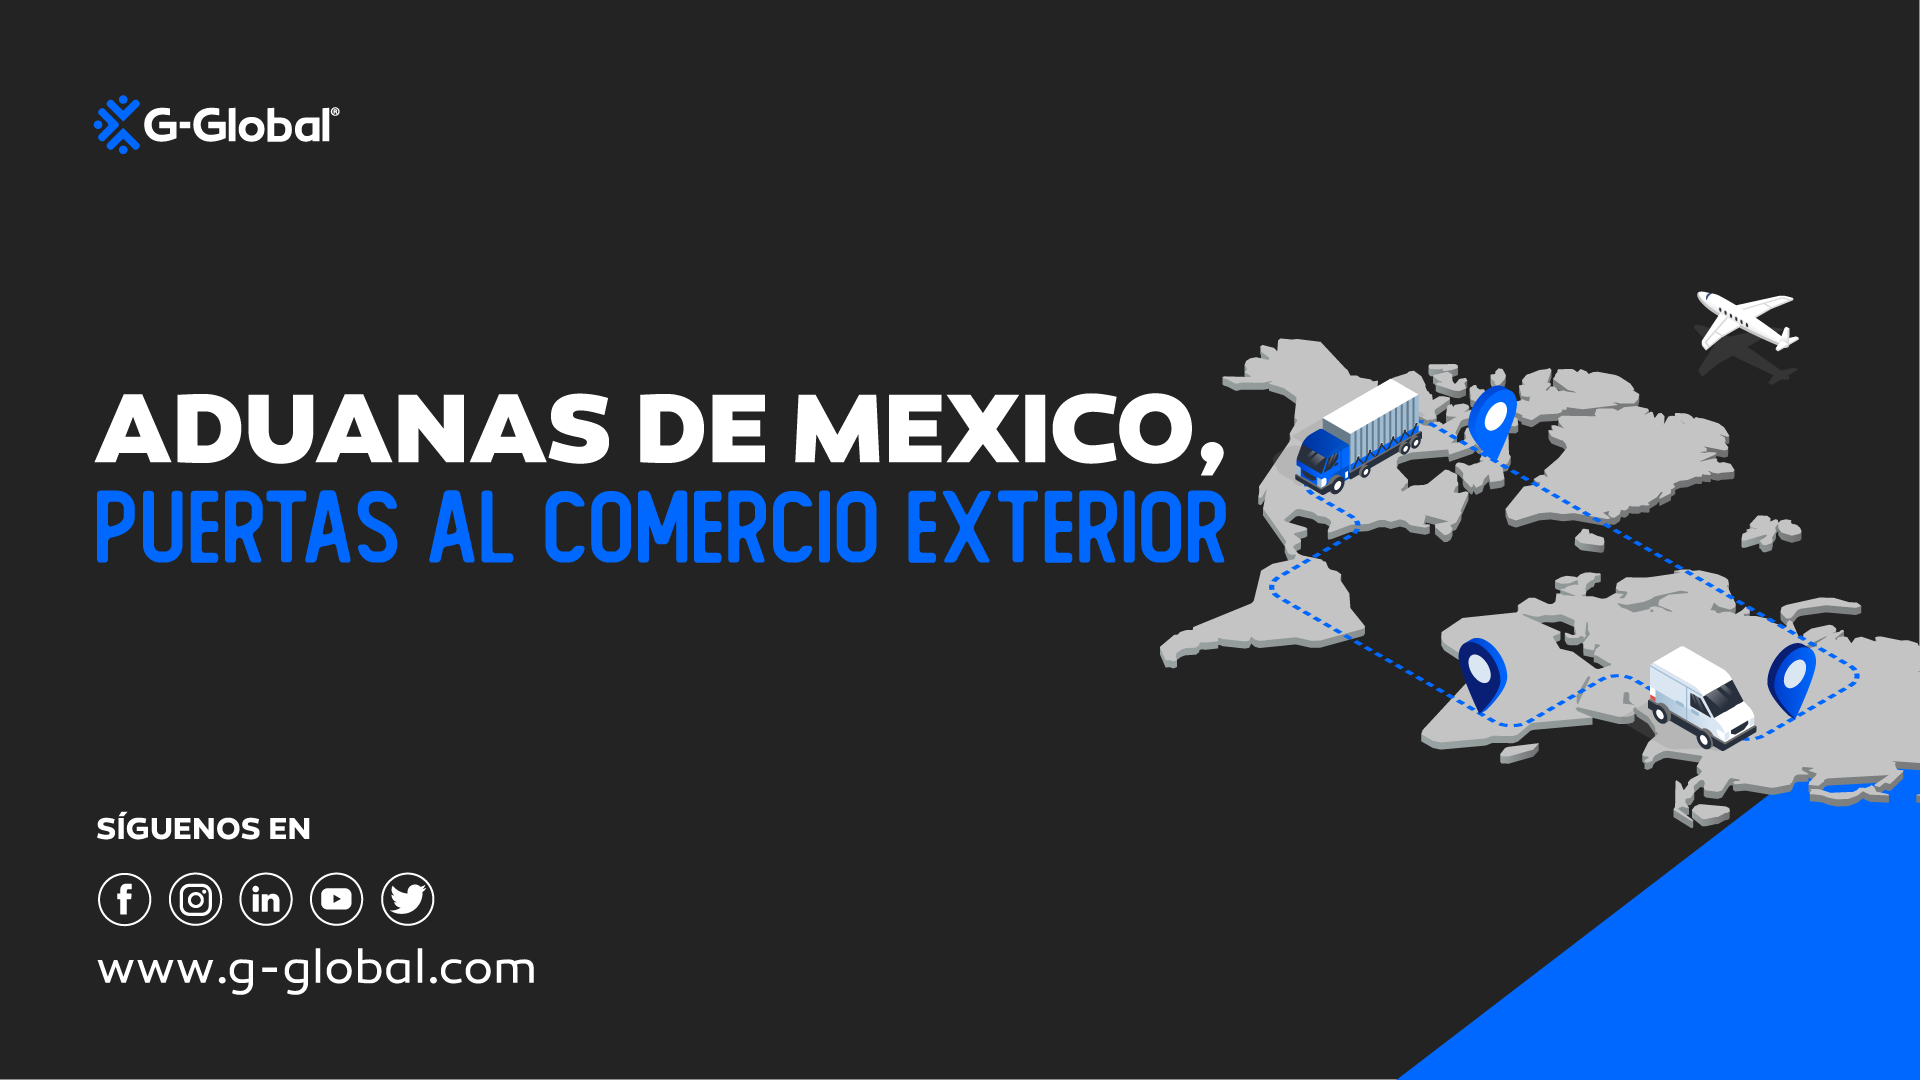 Aduana de México puertas al comercio exterior